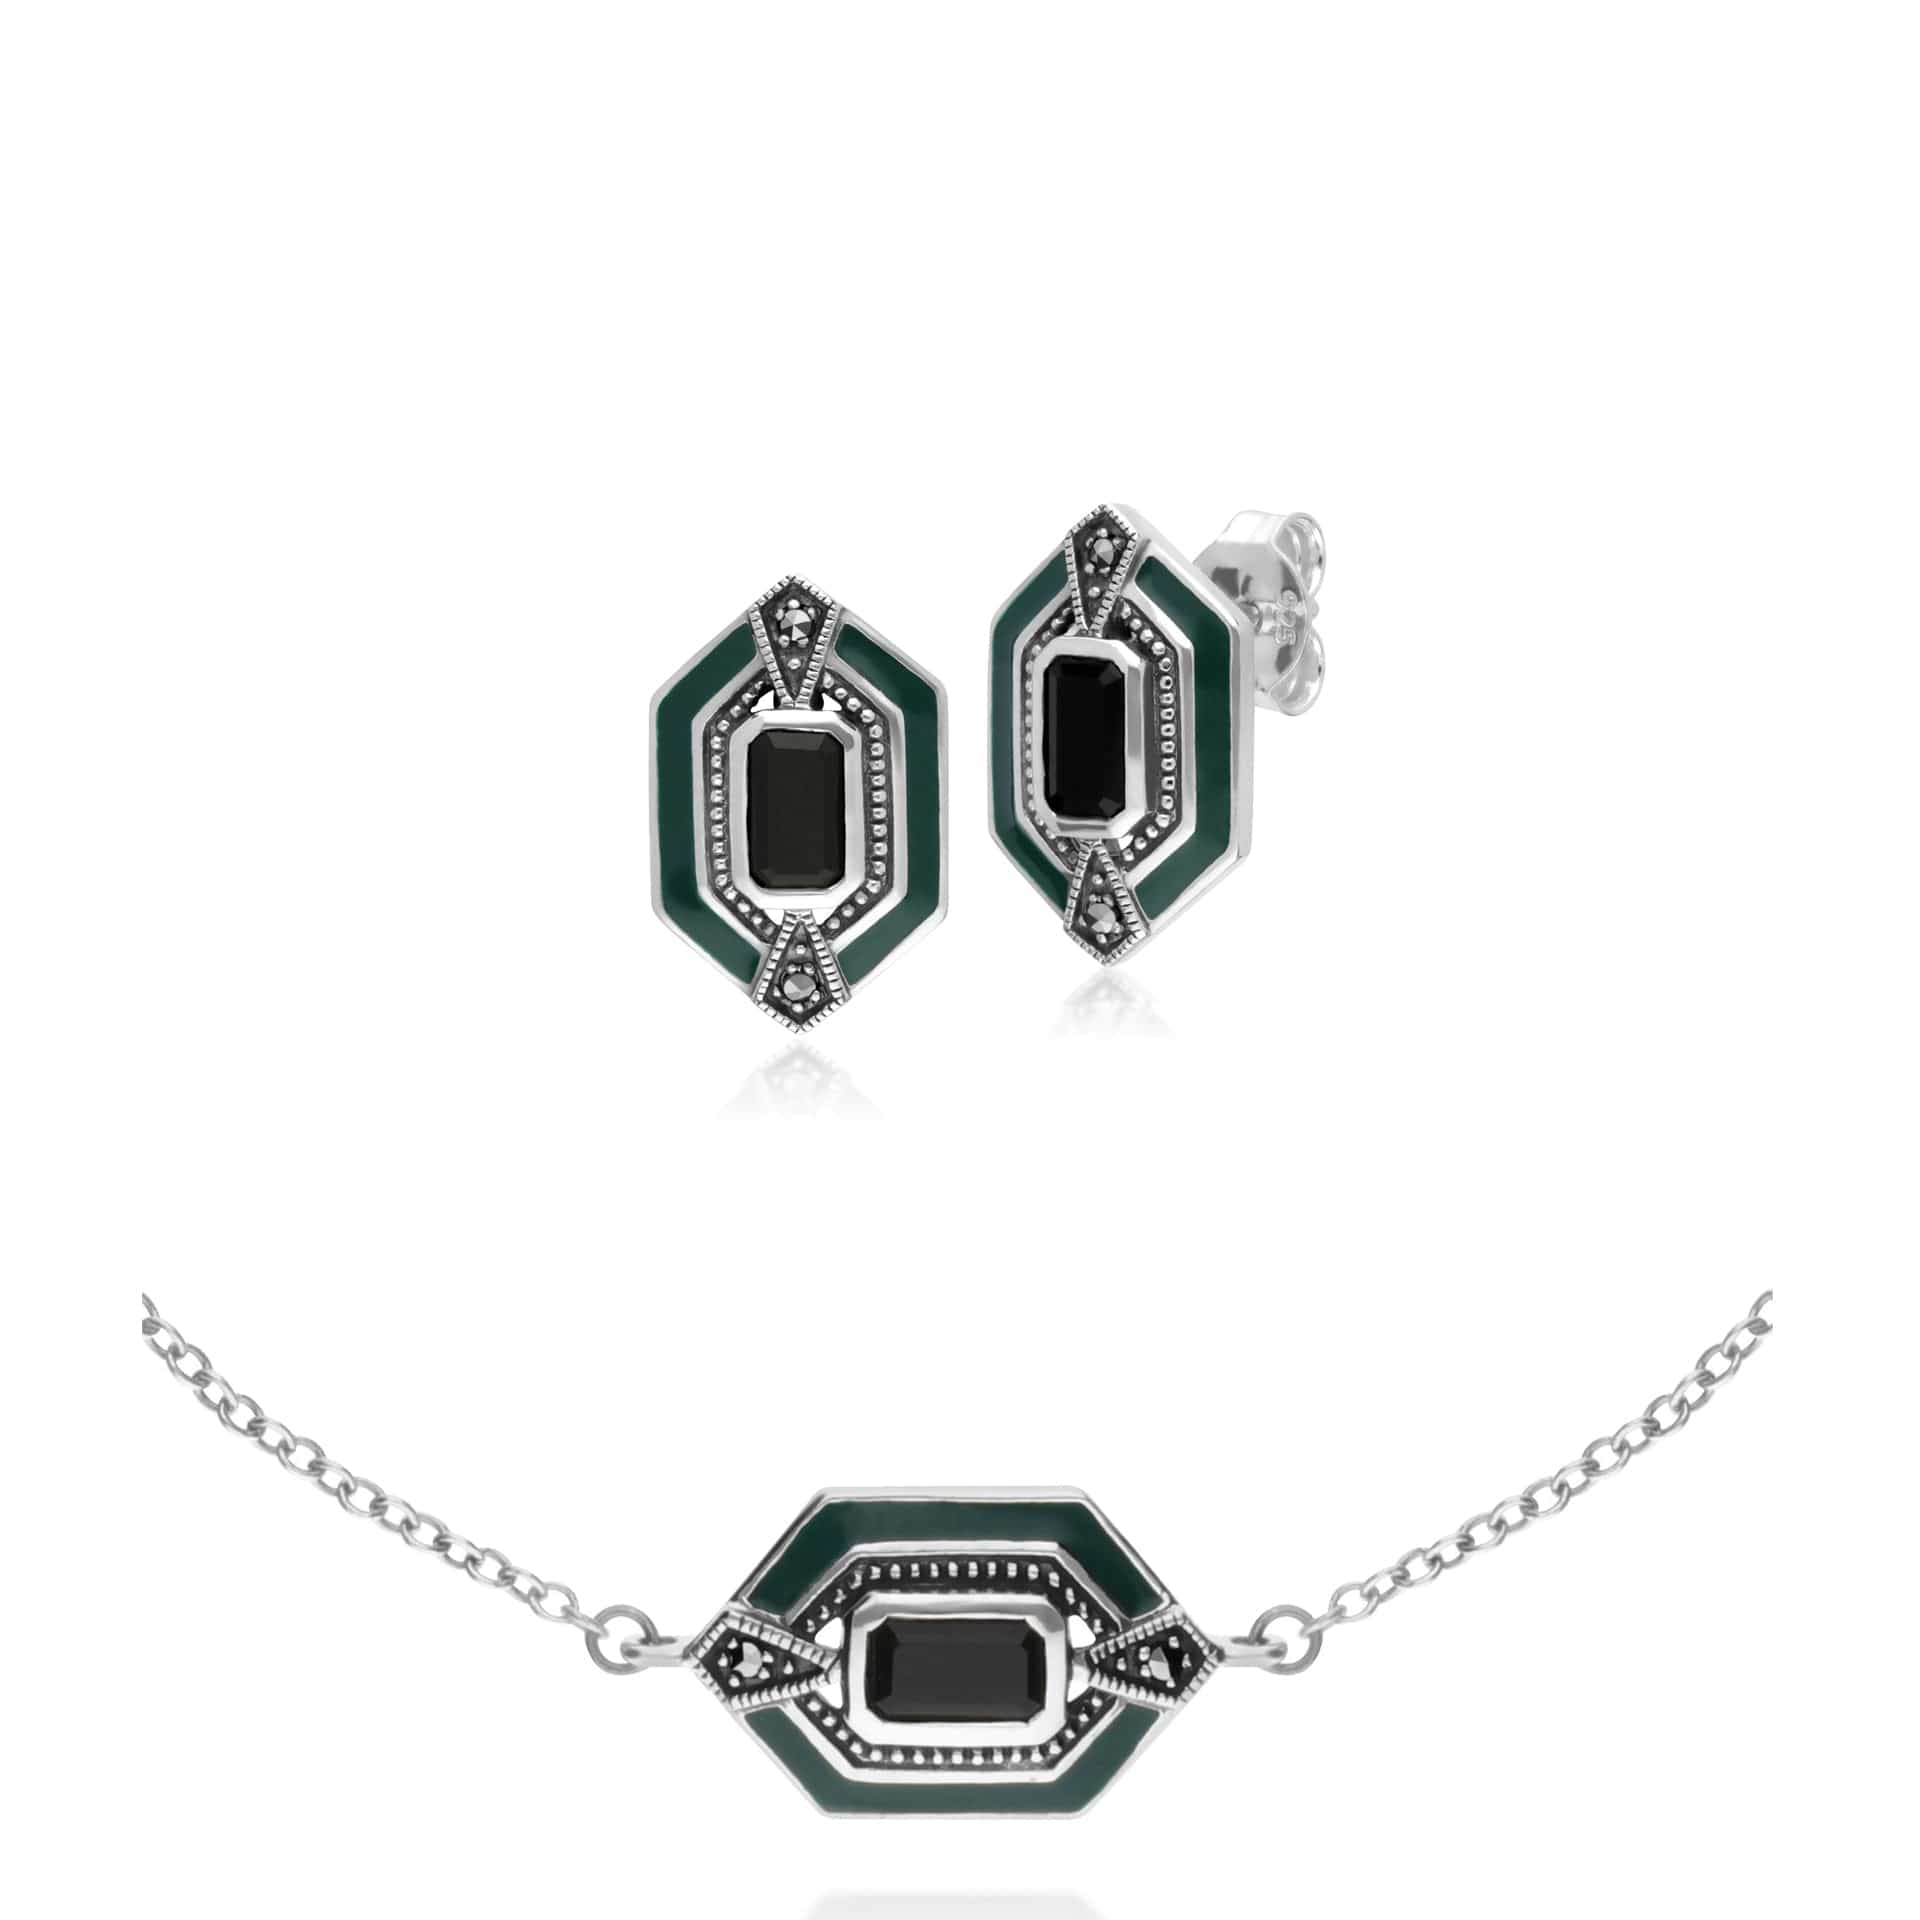 214E868104925-214L164504925 Art Deco Style Black Onyx, Marcasite & Green Enamel Hexagon Stud Earrings & Bracelet Set in 925 Sterling Silver 1